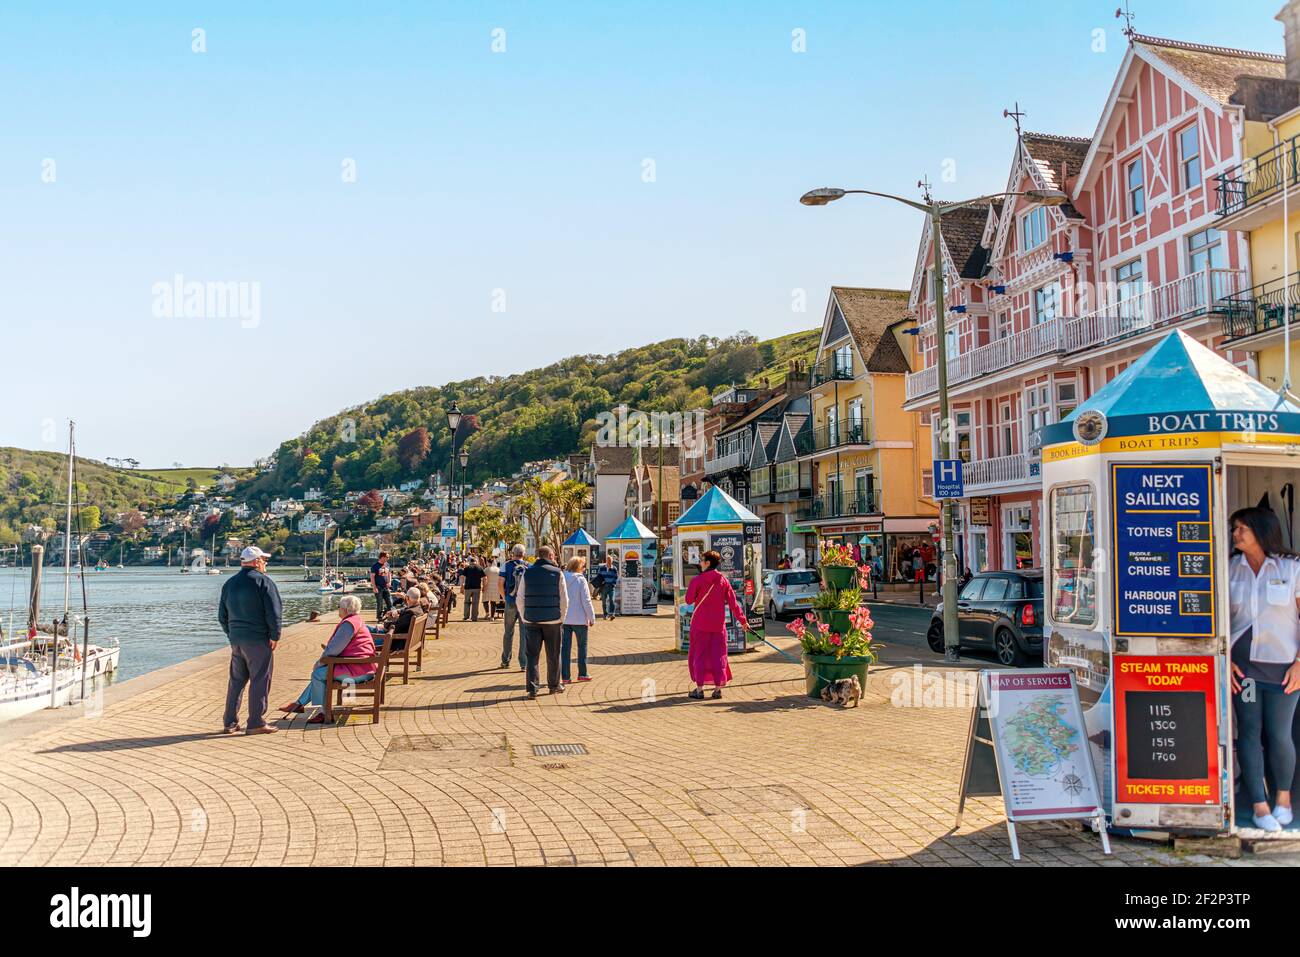 Touristes visitant le front de mer du port de Dartmouth, Devon, Angleterre, Royaume-Uni Banque D'Images